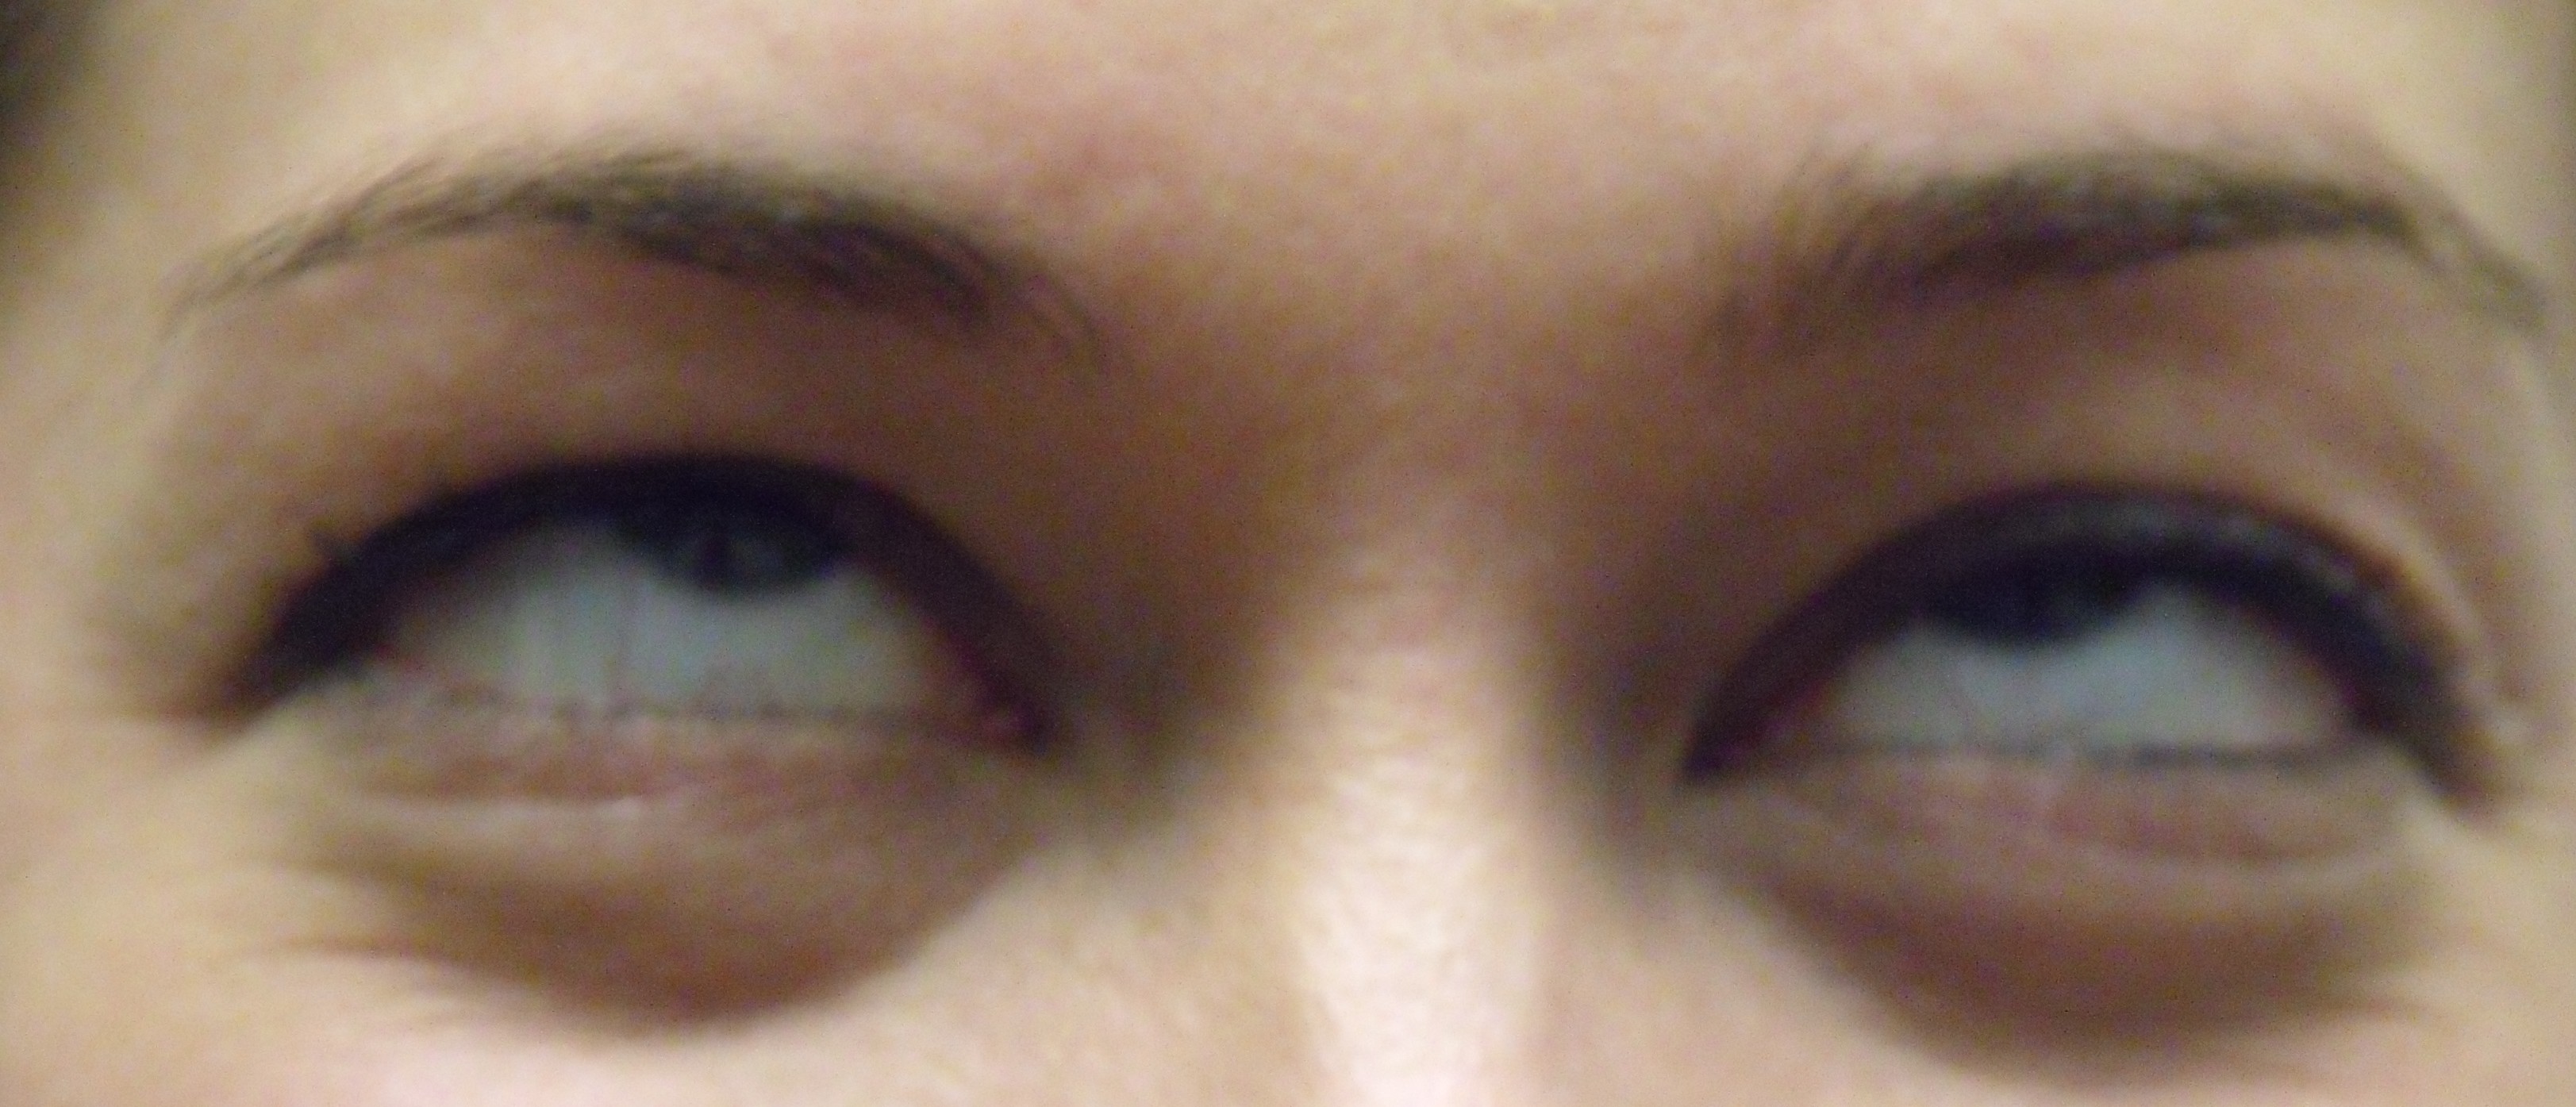 eye-roll test for hypnotizability